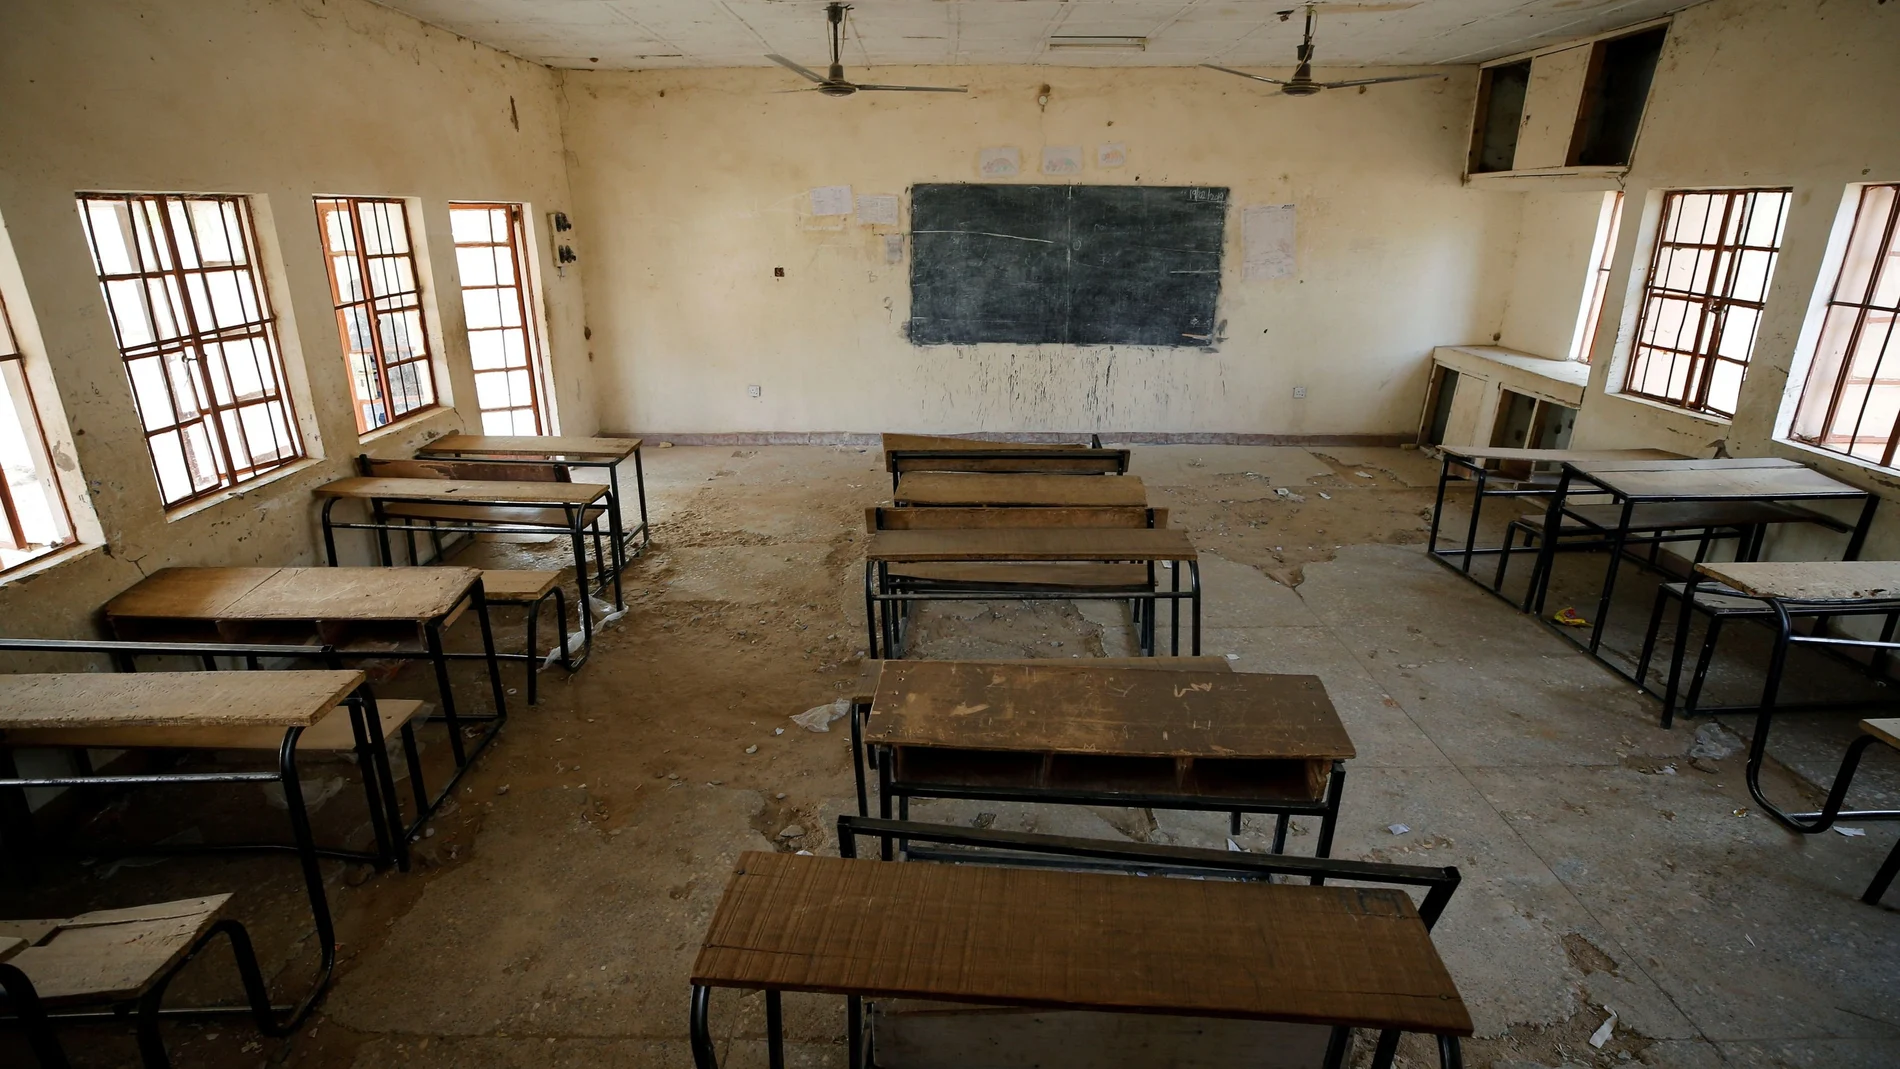 Aula vacía en una escuela de Nigeria donde sus alumnos fueron secuestrados por Boko Haram